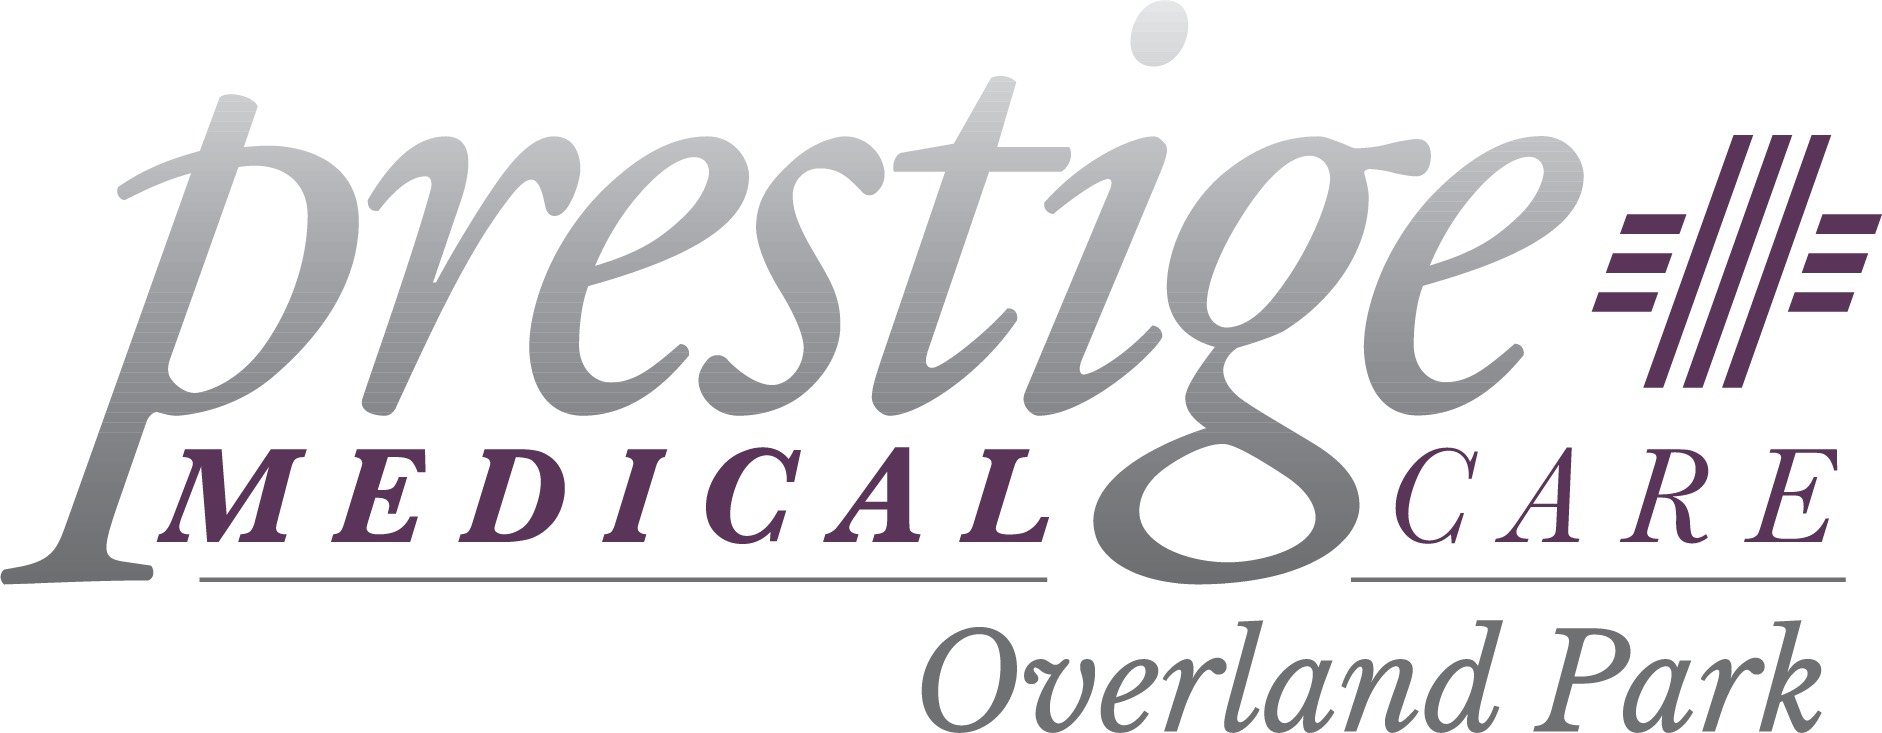 Prestige Medical Care - Overland Park Logo